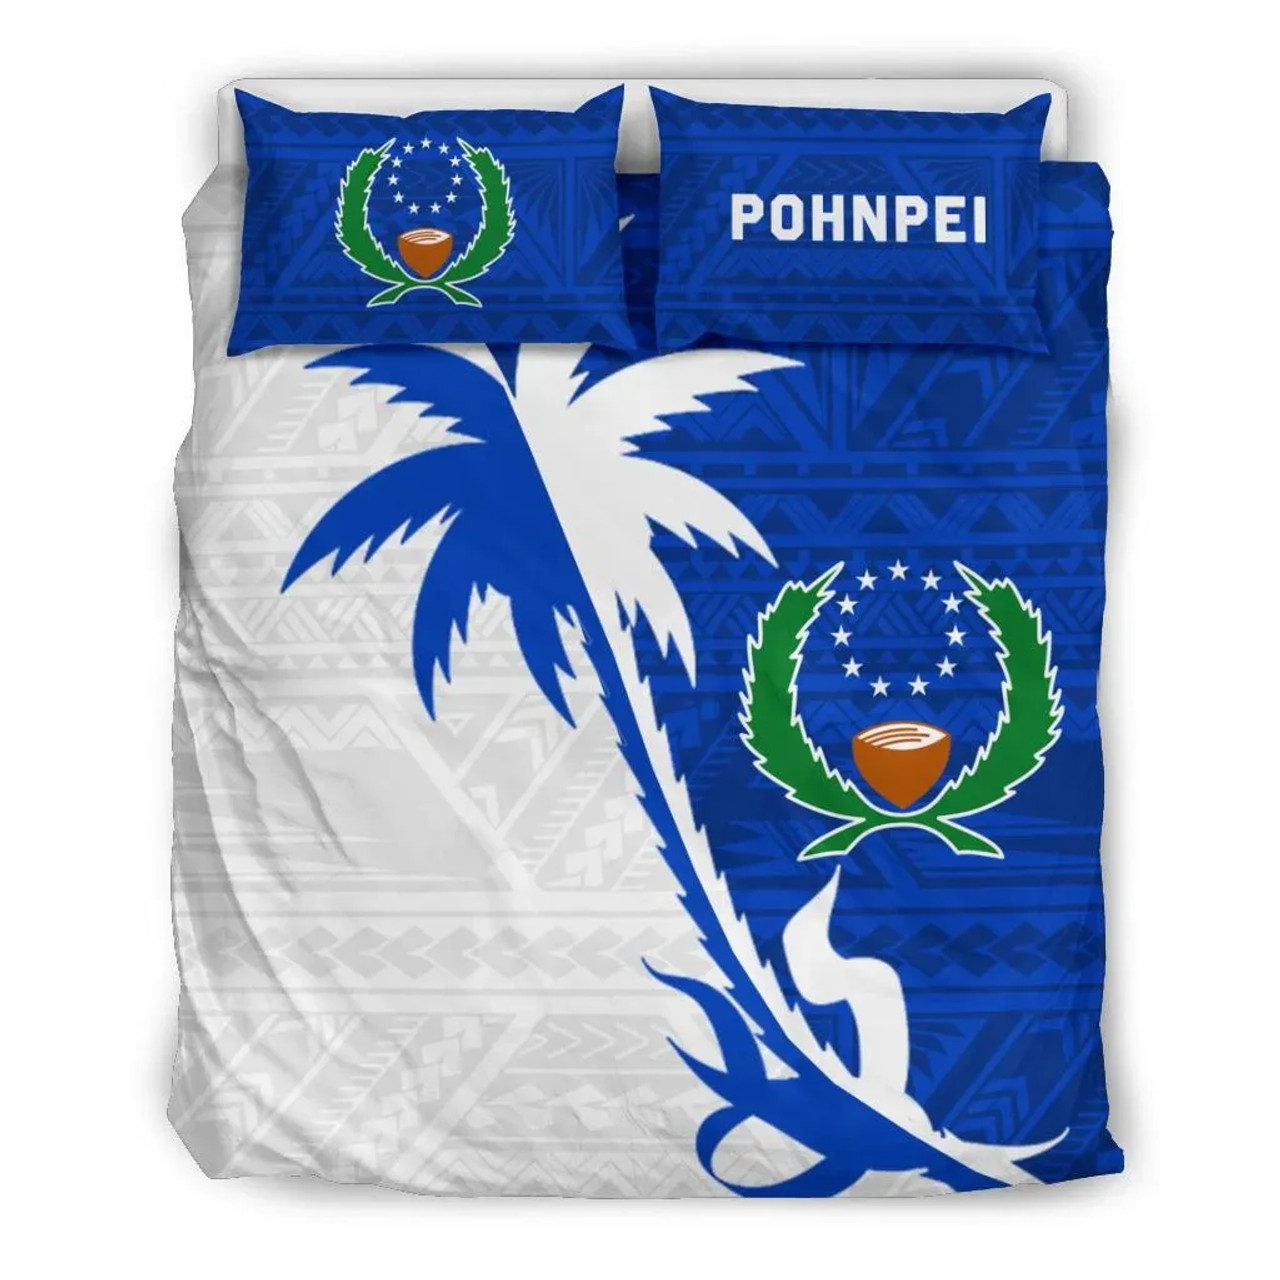 Pohnpei Duvet Cover Set - Pohnpei Flag & Coconut Tree 2